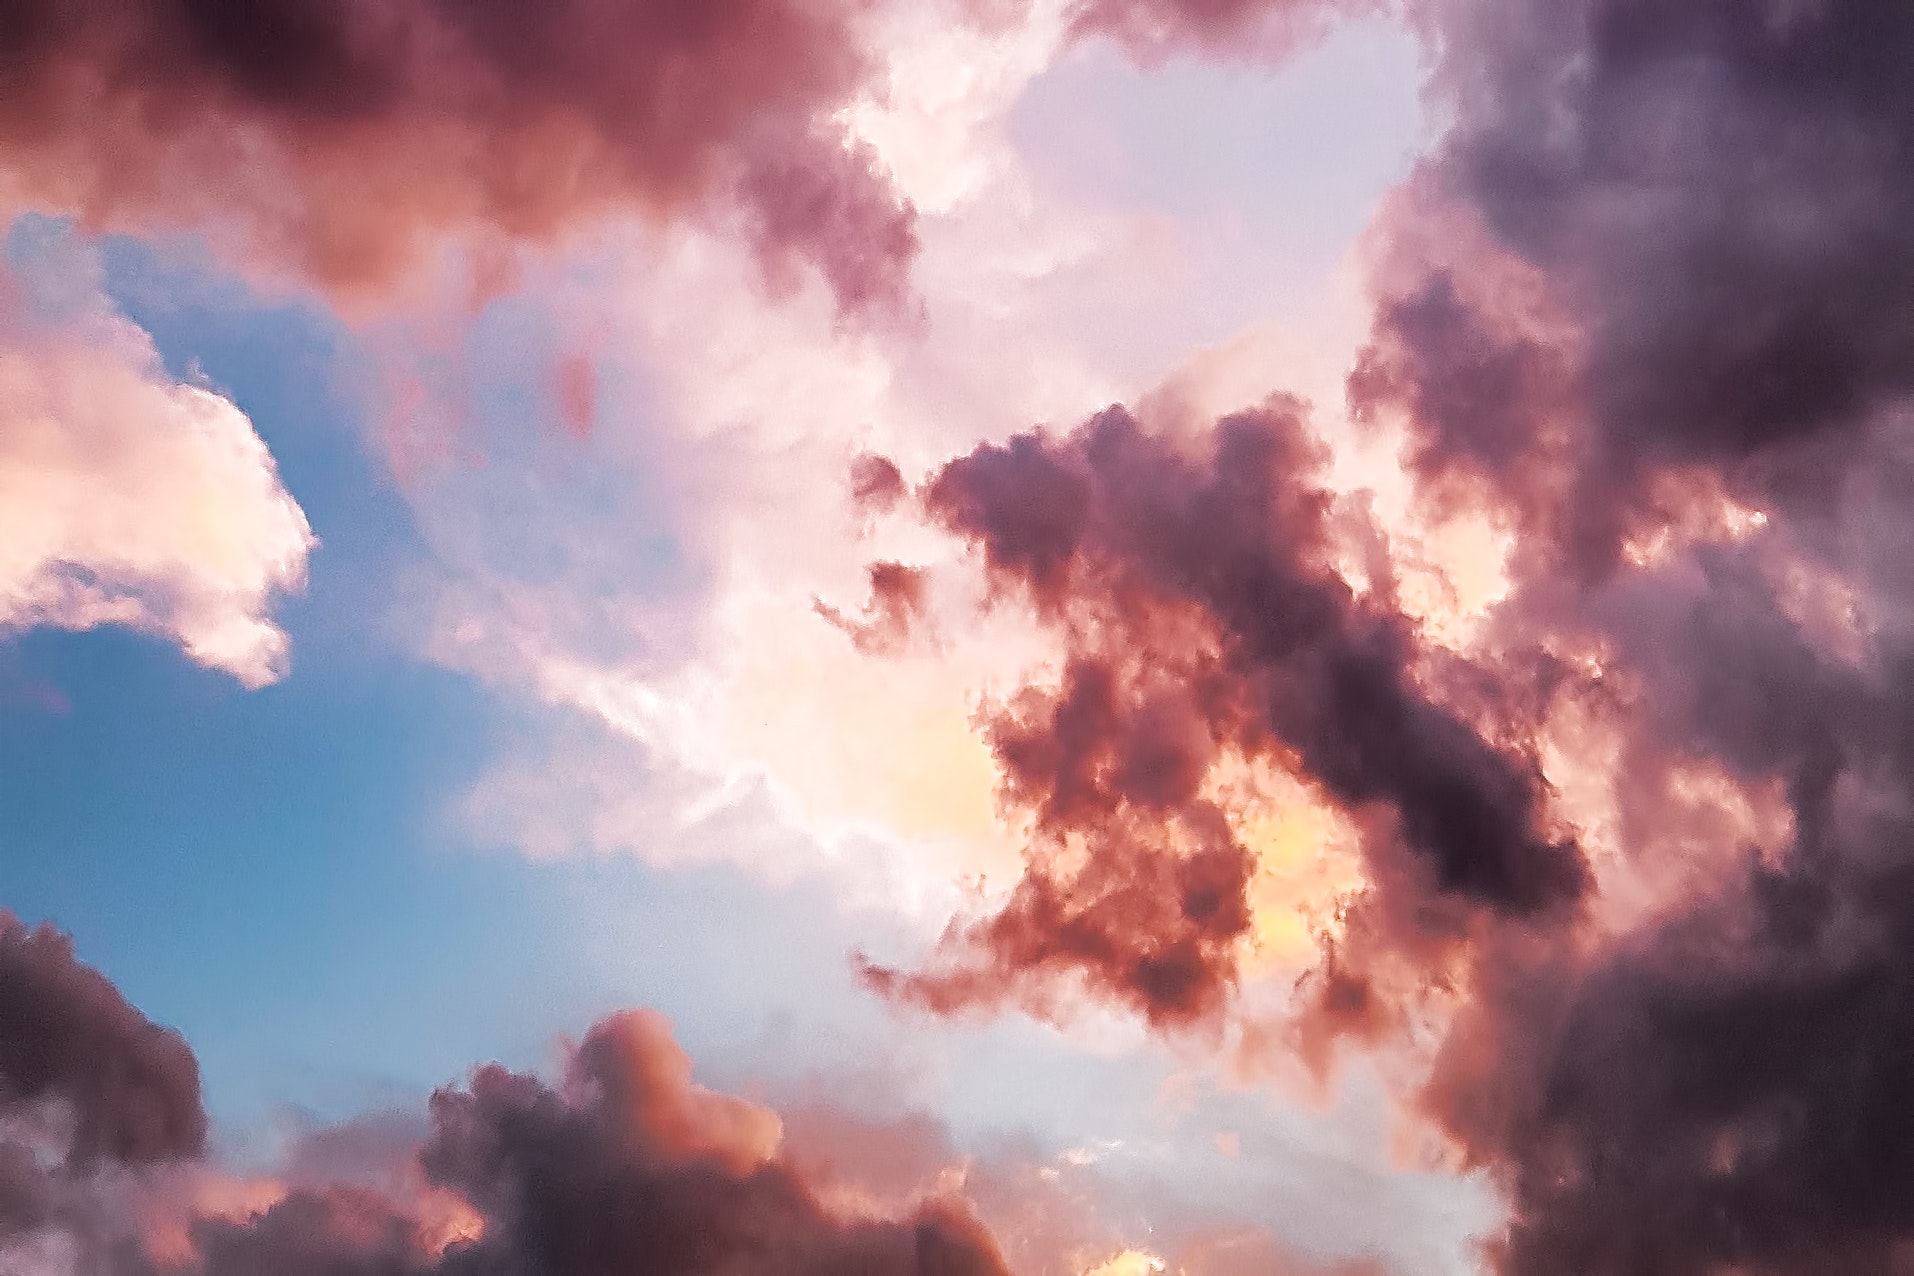 Hãy ngẩn ngơ để đồng hành cùng những đám mây đỏ và xanh như thể đang đùa giỡn trên bầu trời. Chúng ta cùng tìm những hình ảnh đẹp nhất về đám mây để giải tỏa căng thẳng trong cuộc sống nhé.